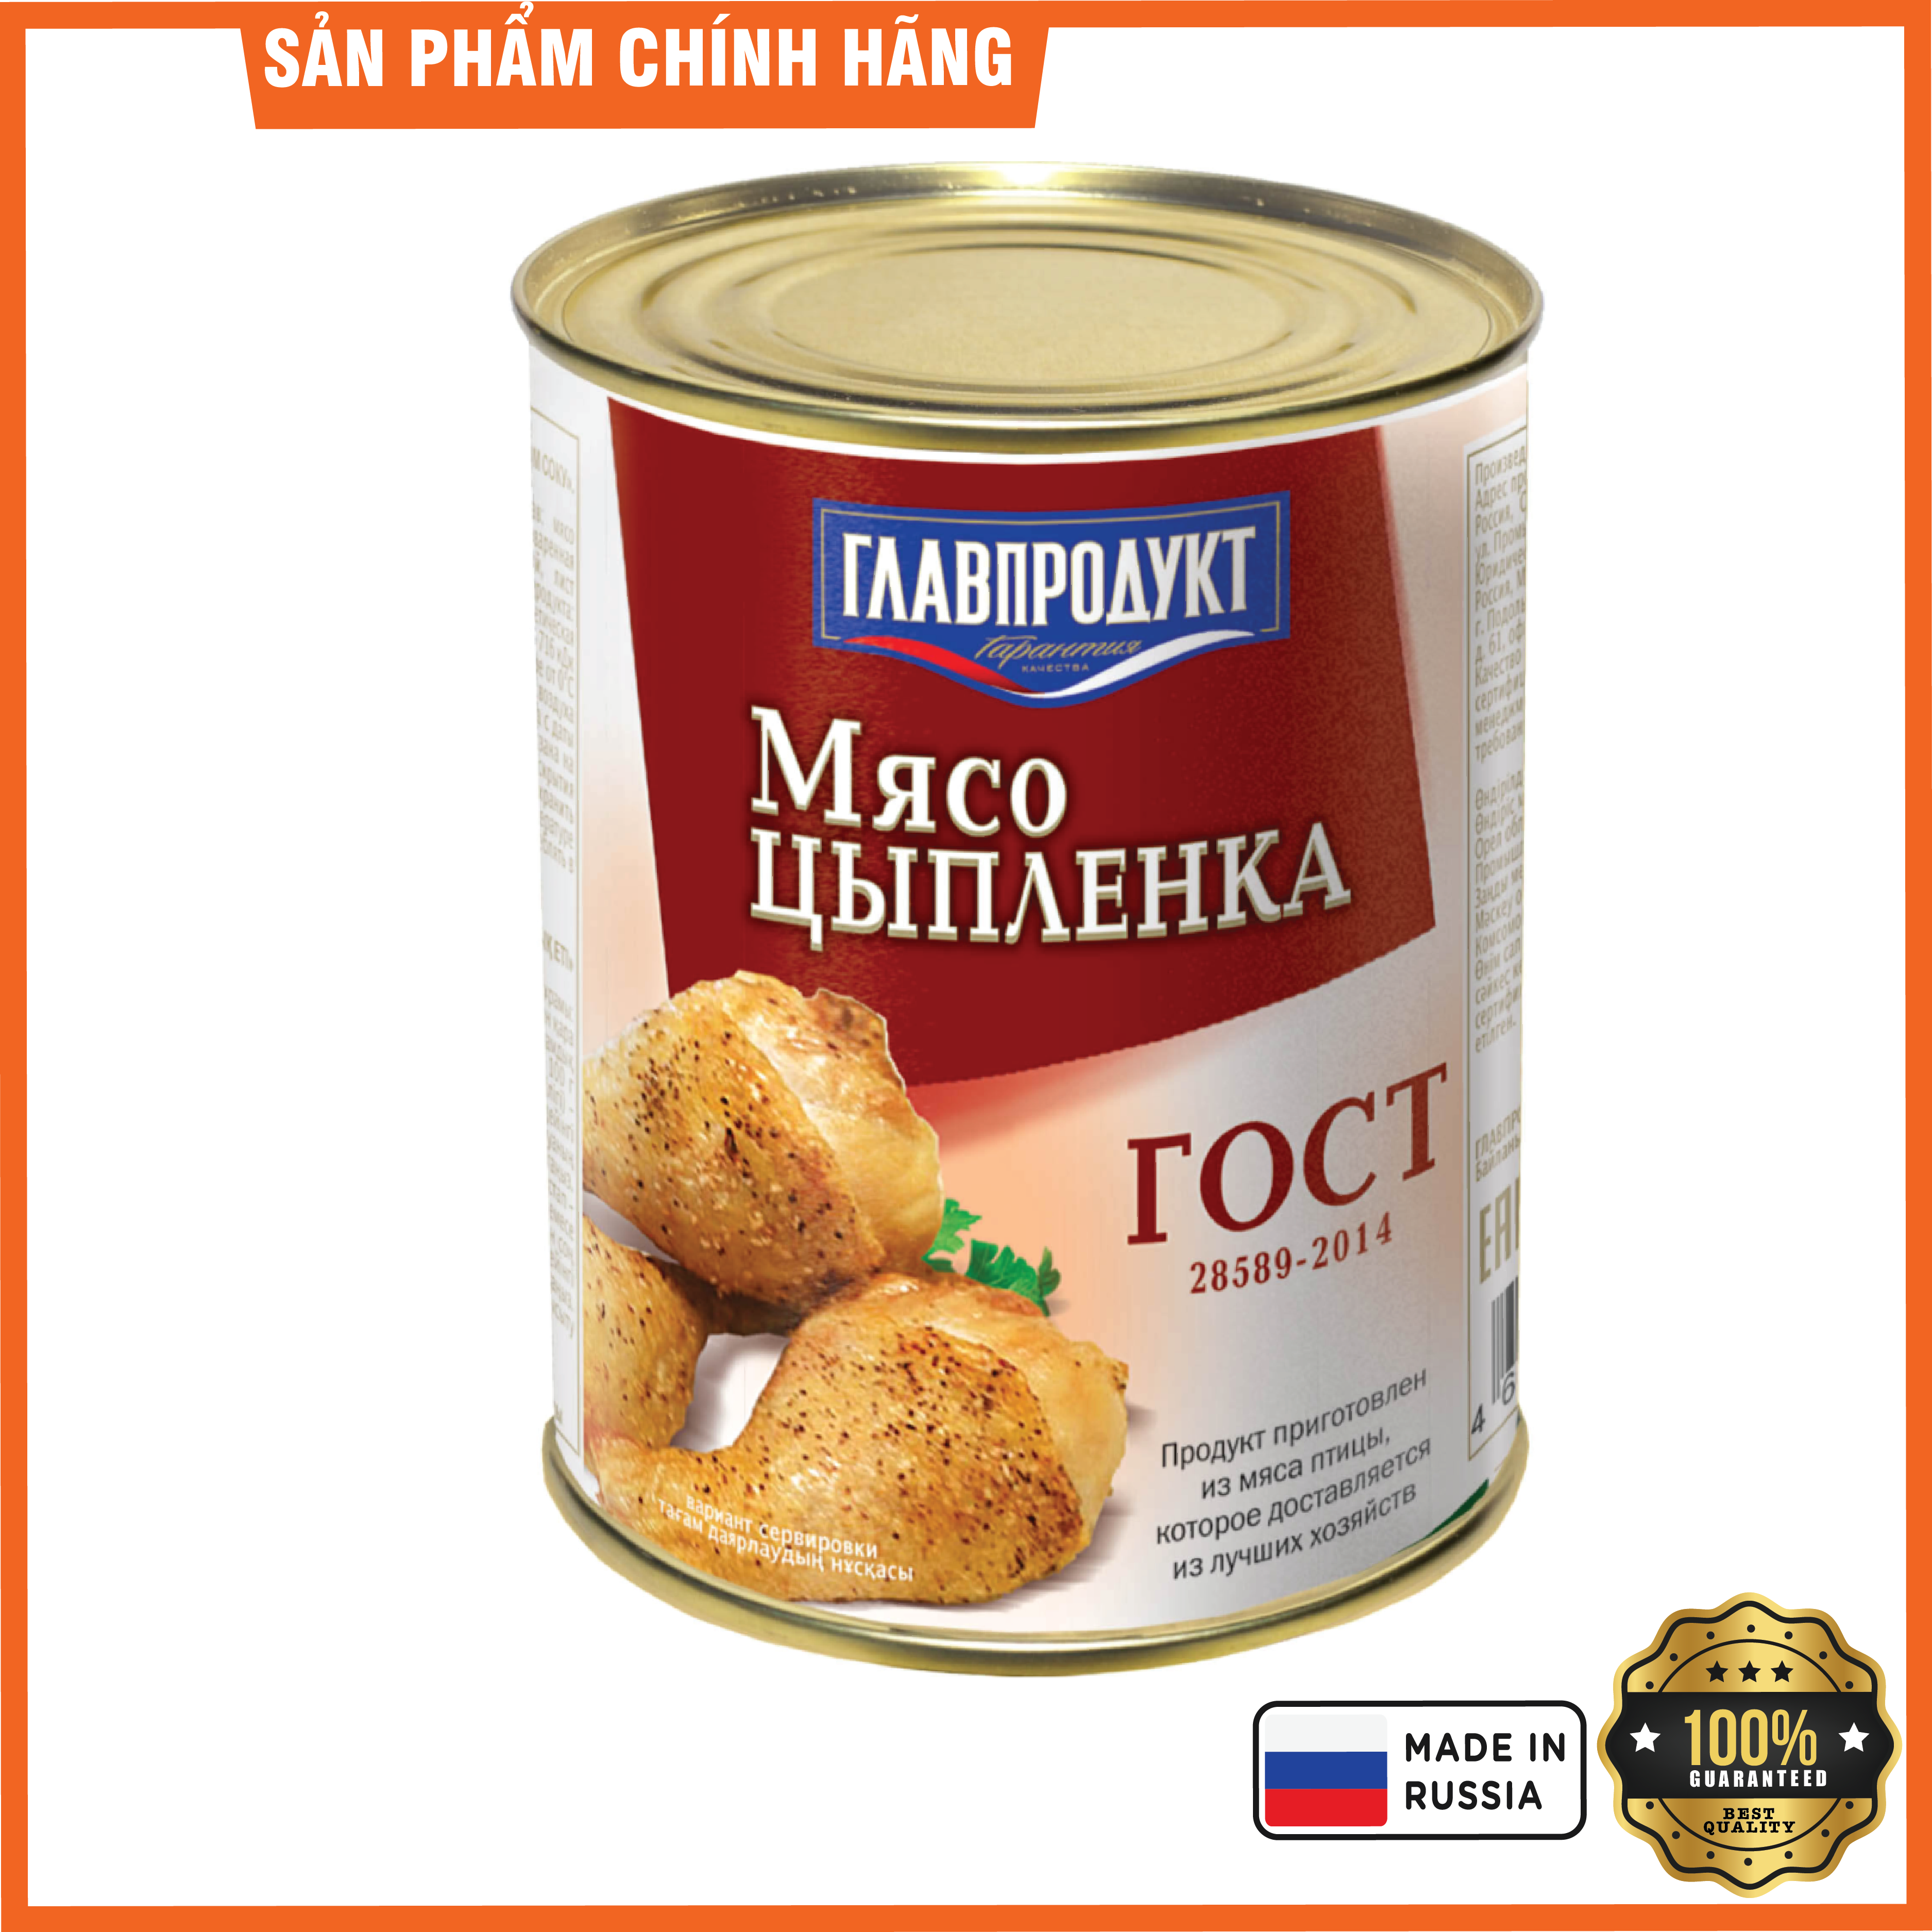 Thịt gà hầm hiệu Glavproduct 350g (NK Nga)